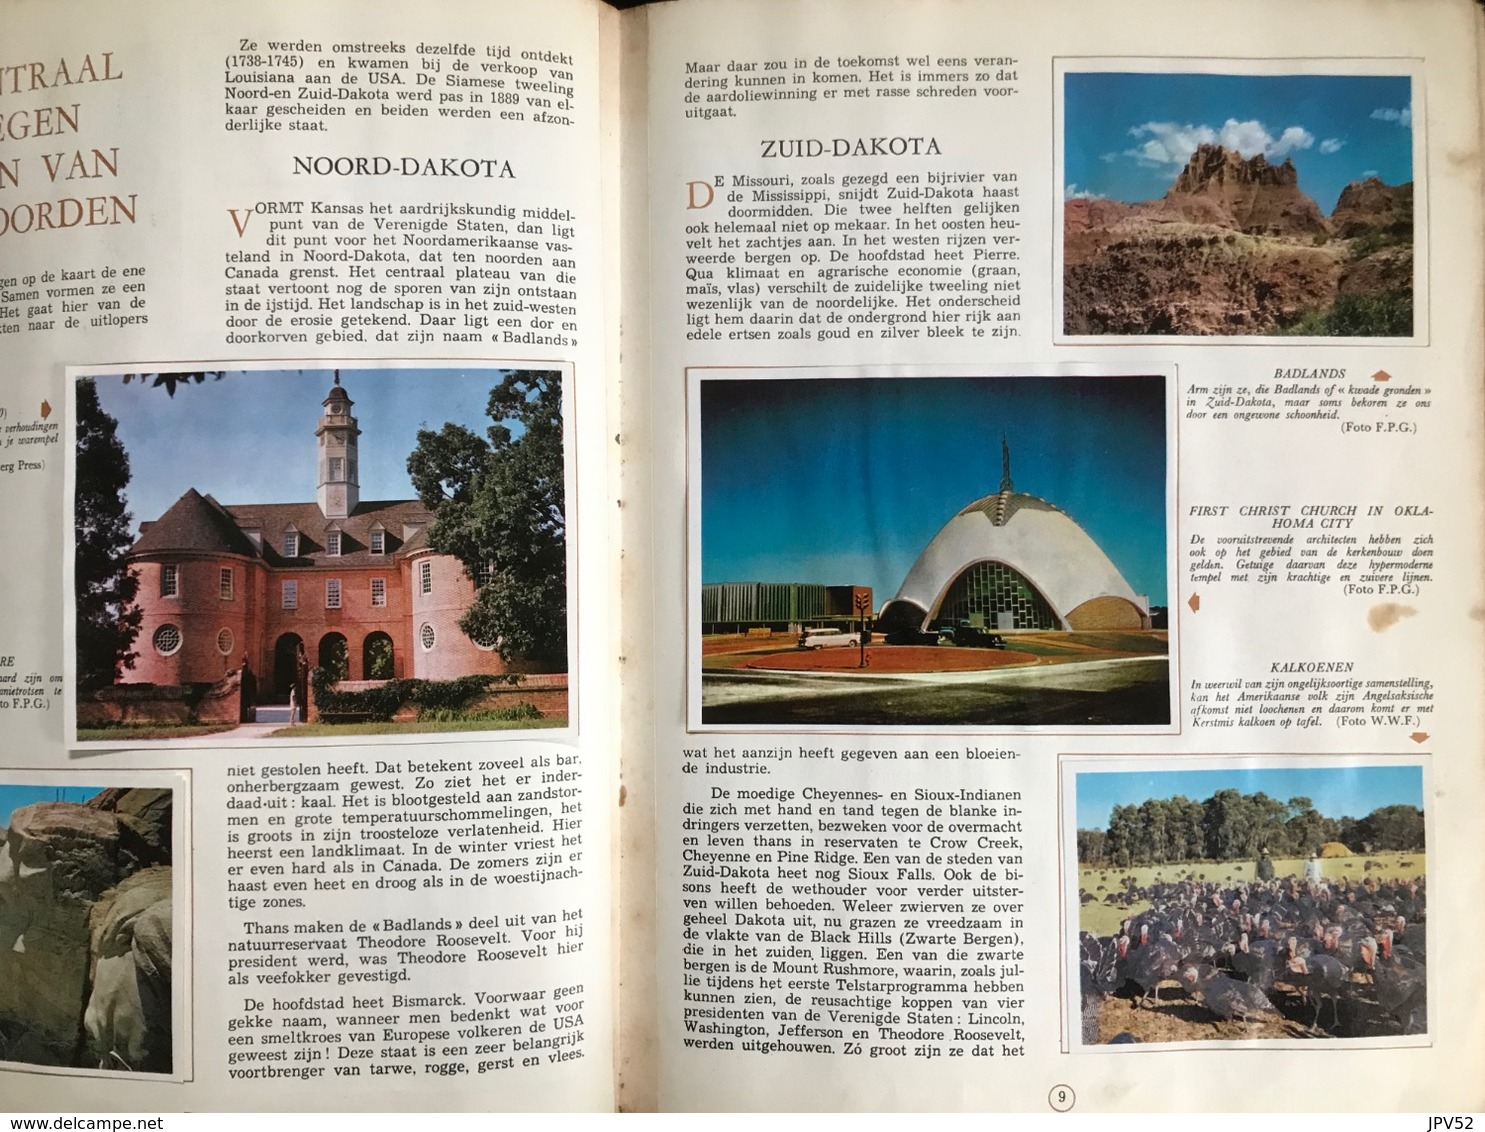 (314) Aardrijkskunde Van Amerika - De Lombard TINTIN - KUIFJE Uitgave - Deel II -1963 - Aardrijkskunde